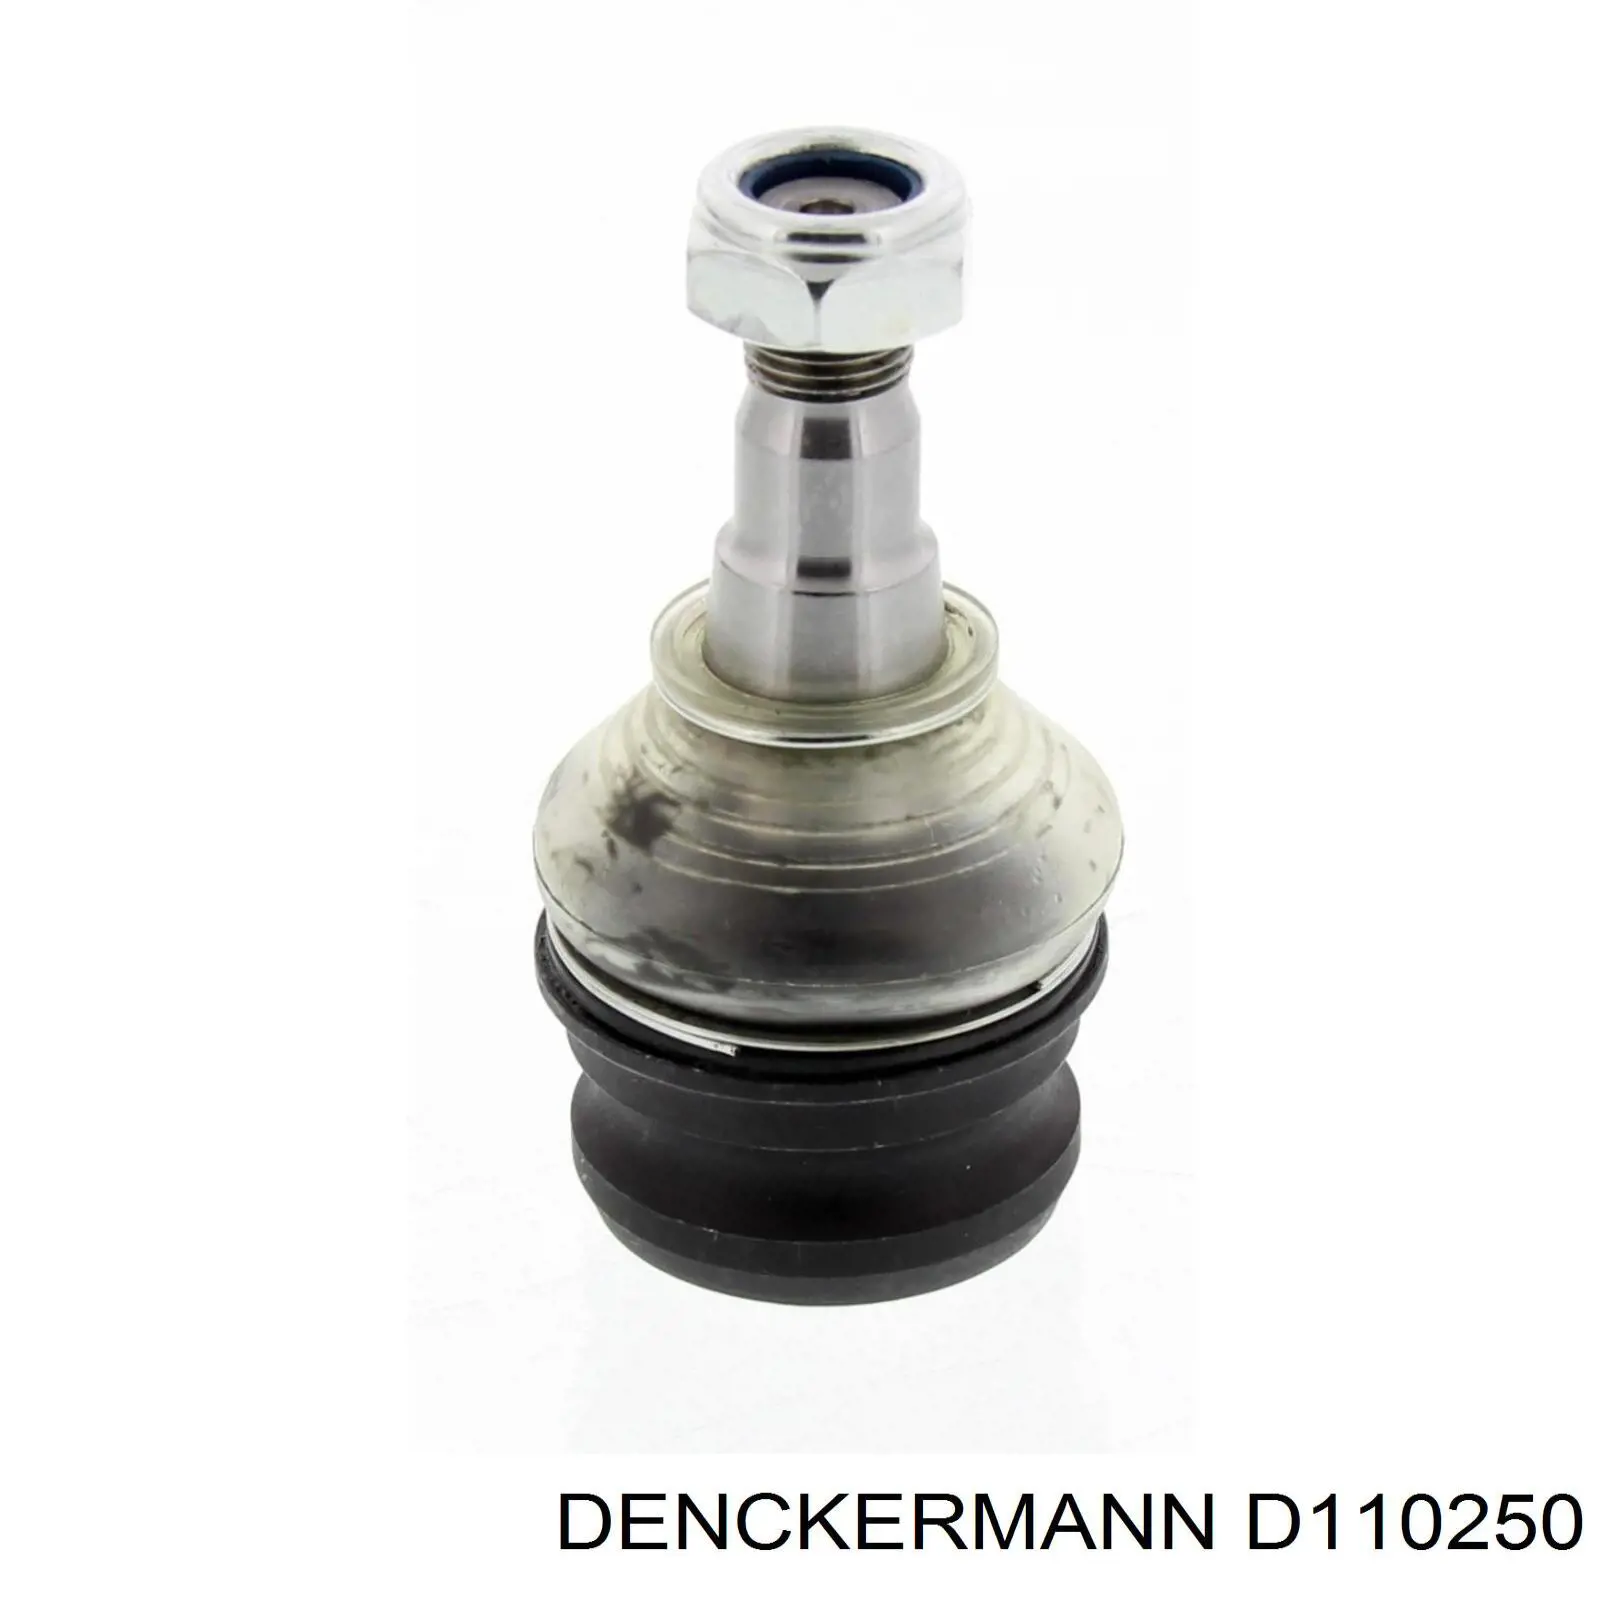 D110250 Denckermann rótula de suspensión inferior